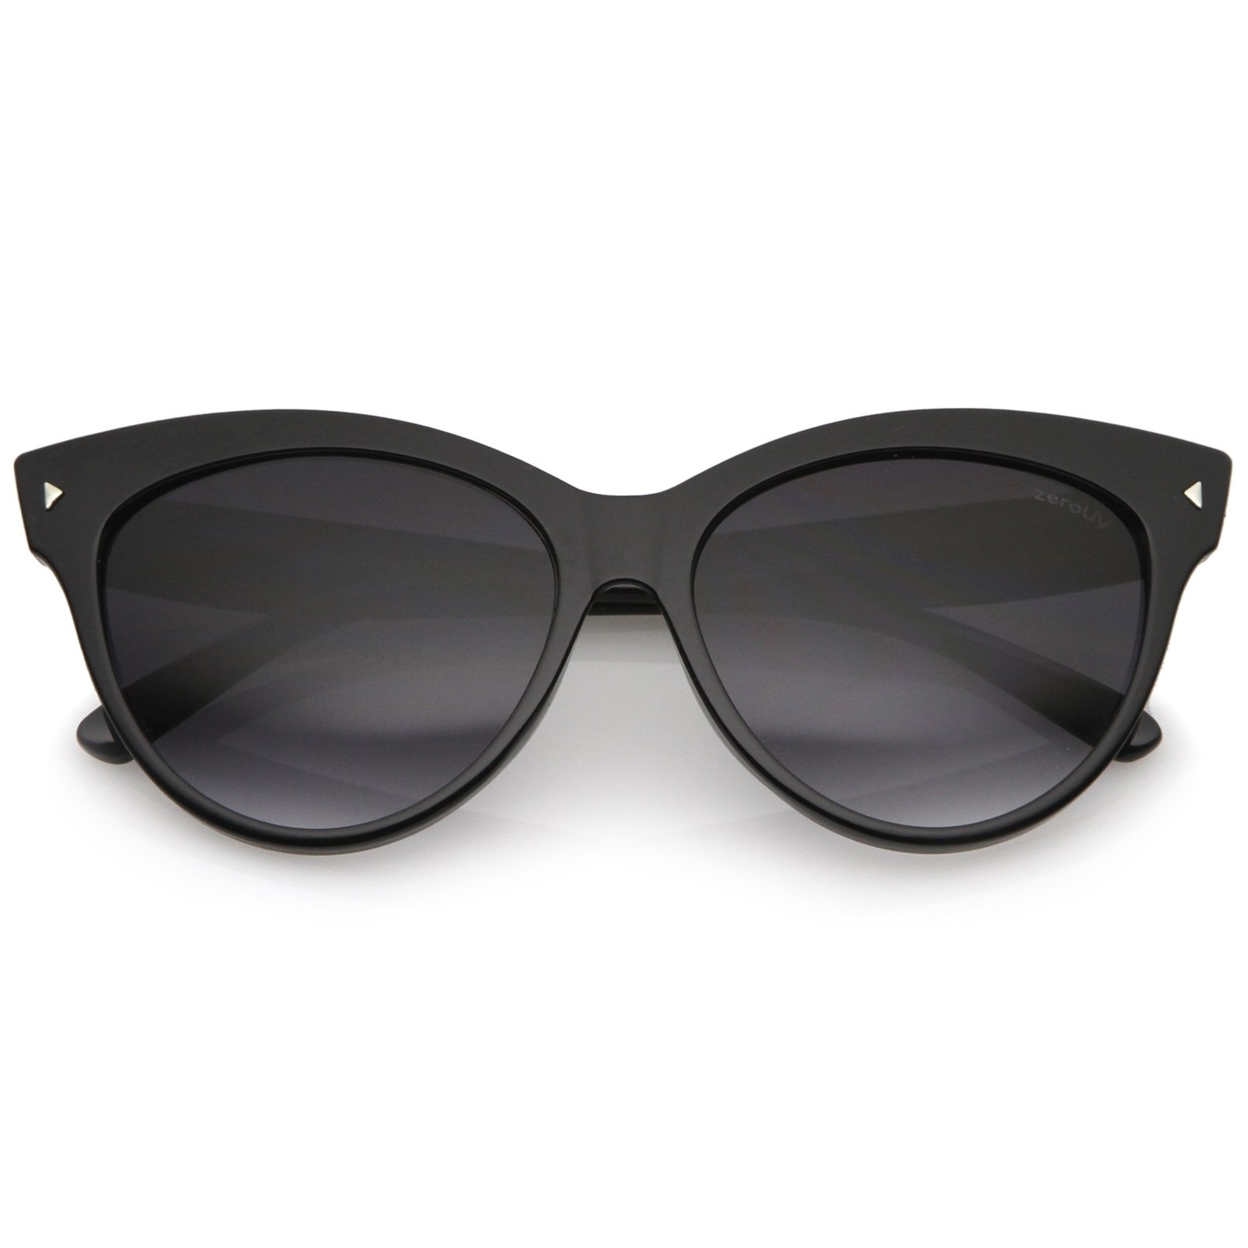 Women's Mod Oversize Horn Rimmed Cat Eye Sunglasses 52mm - White / Amber